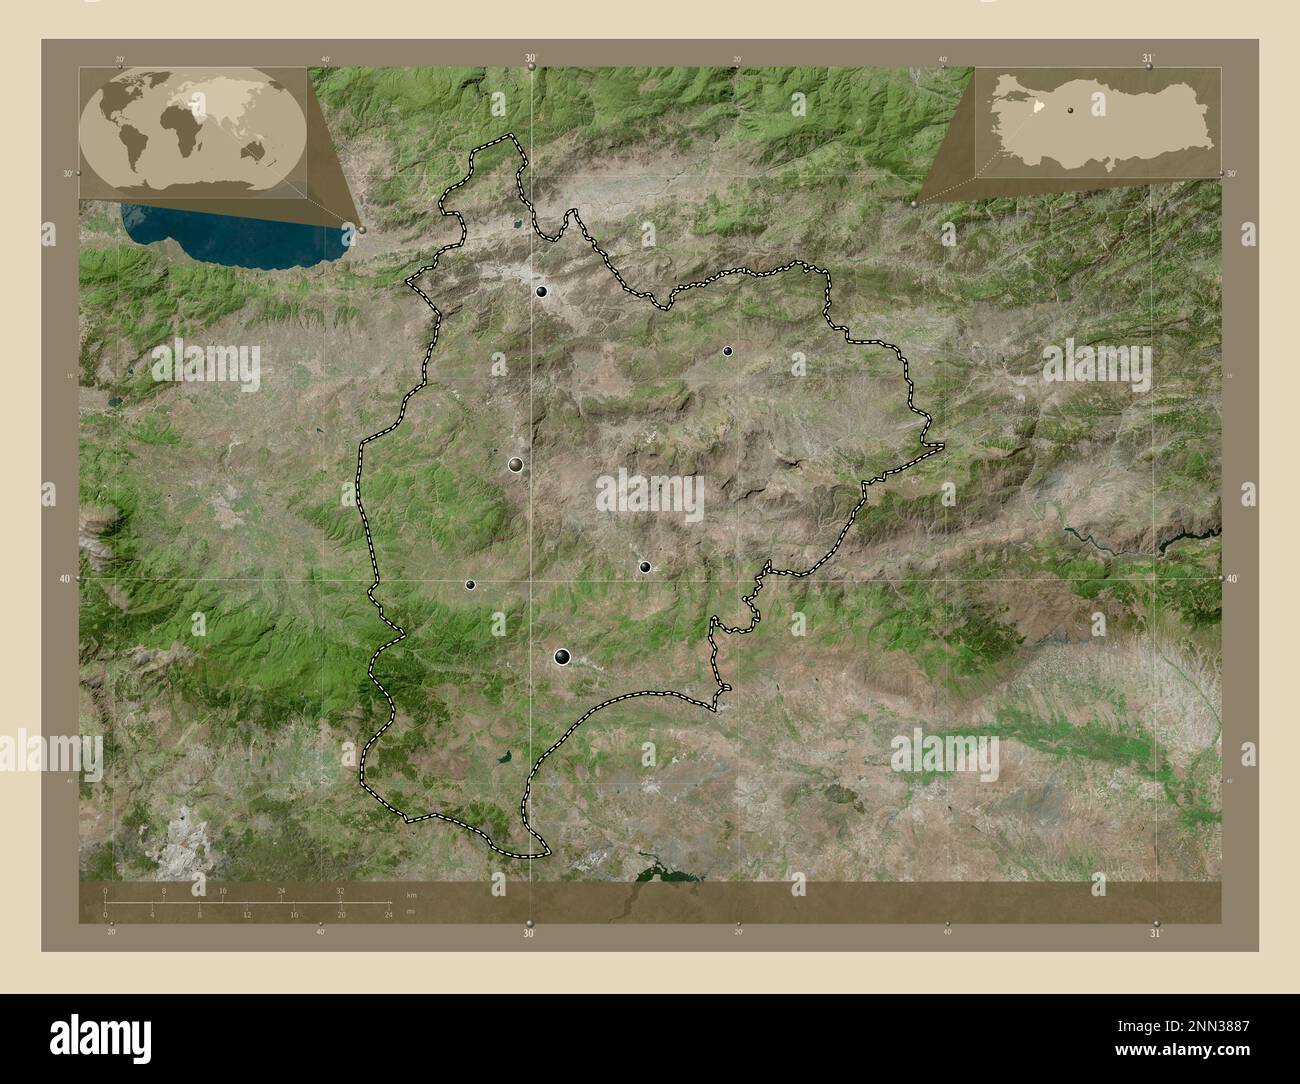 Bilecik, Provinz Turkiye. Hochauflösende Satellitenkarte. Standorte der wichtigsten Städte der Region. Eckkarten für zusätzliche Standorte Stockfoto